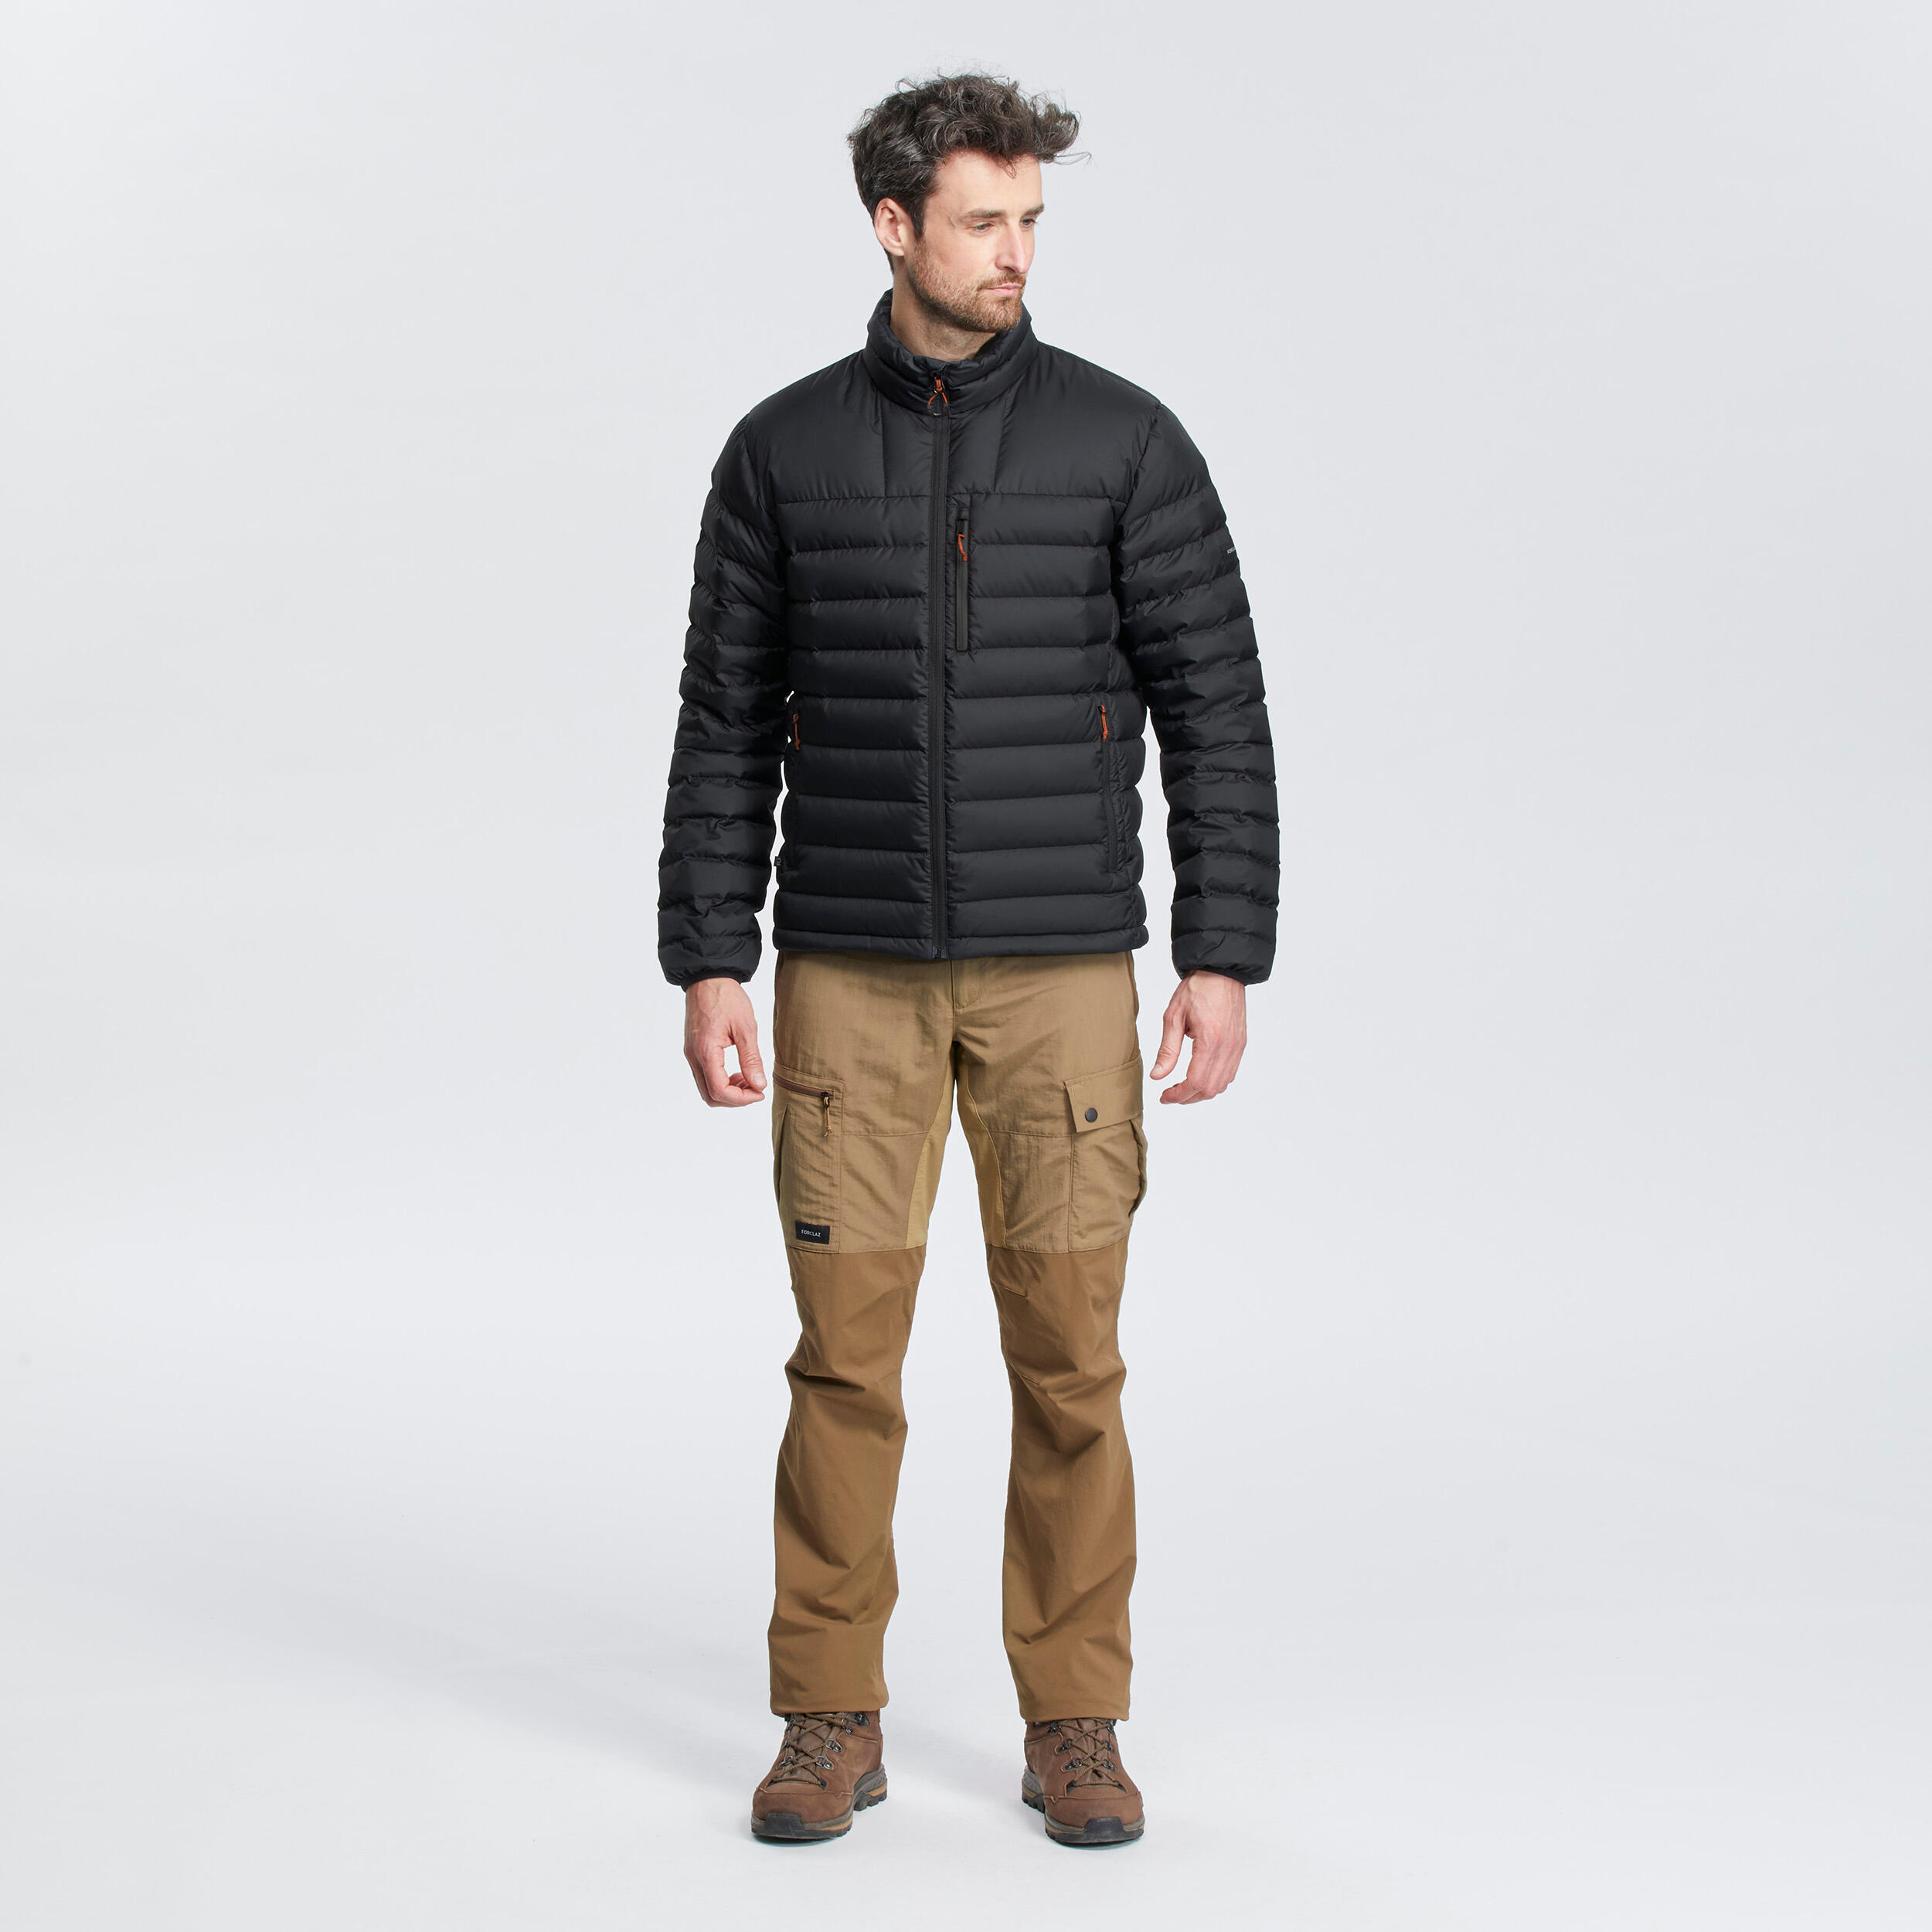 Manteau d'hiver en duvet homme – MT 500 noir - FORCLAZ